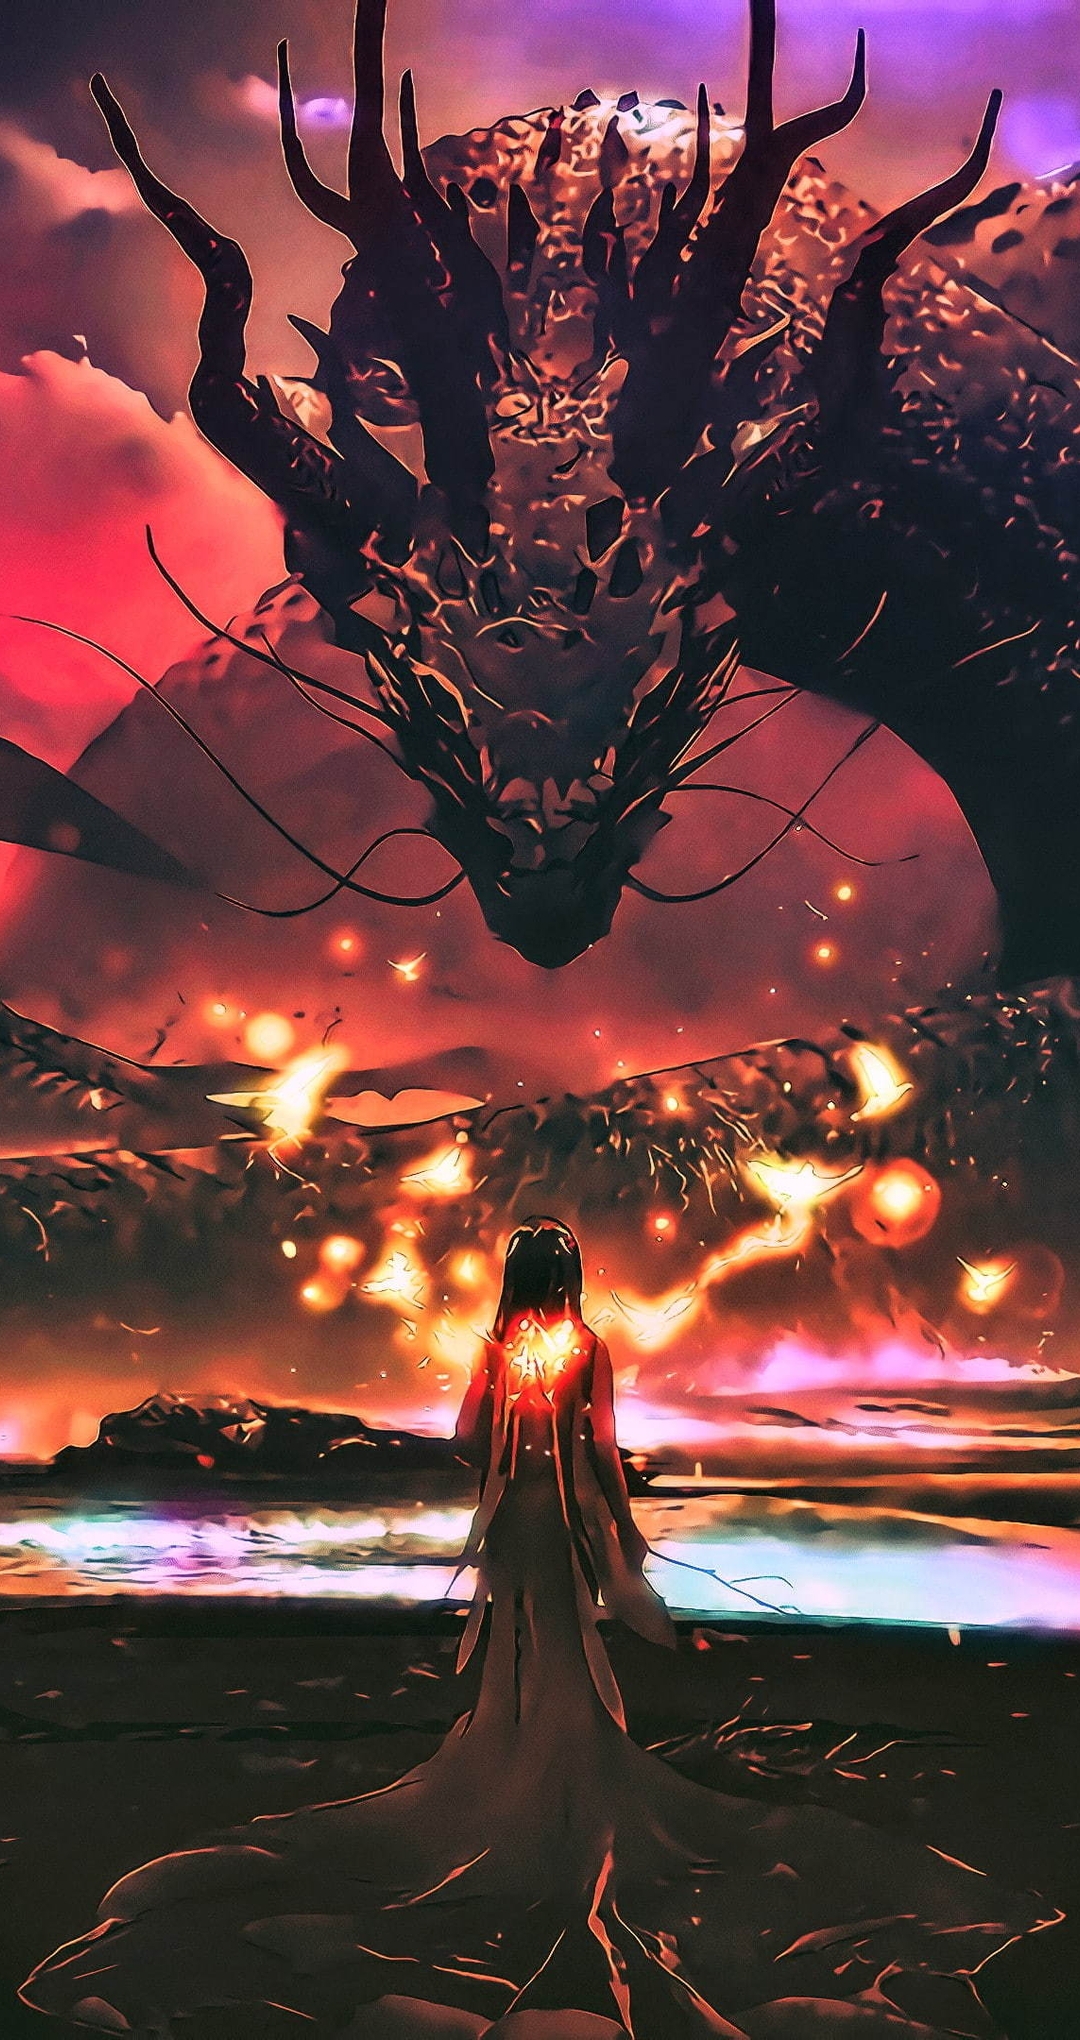 Картинка: Дракон, змей, девушка, огни, вода